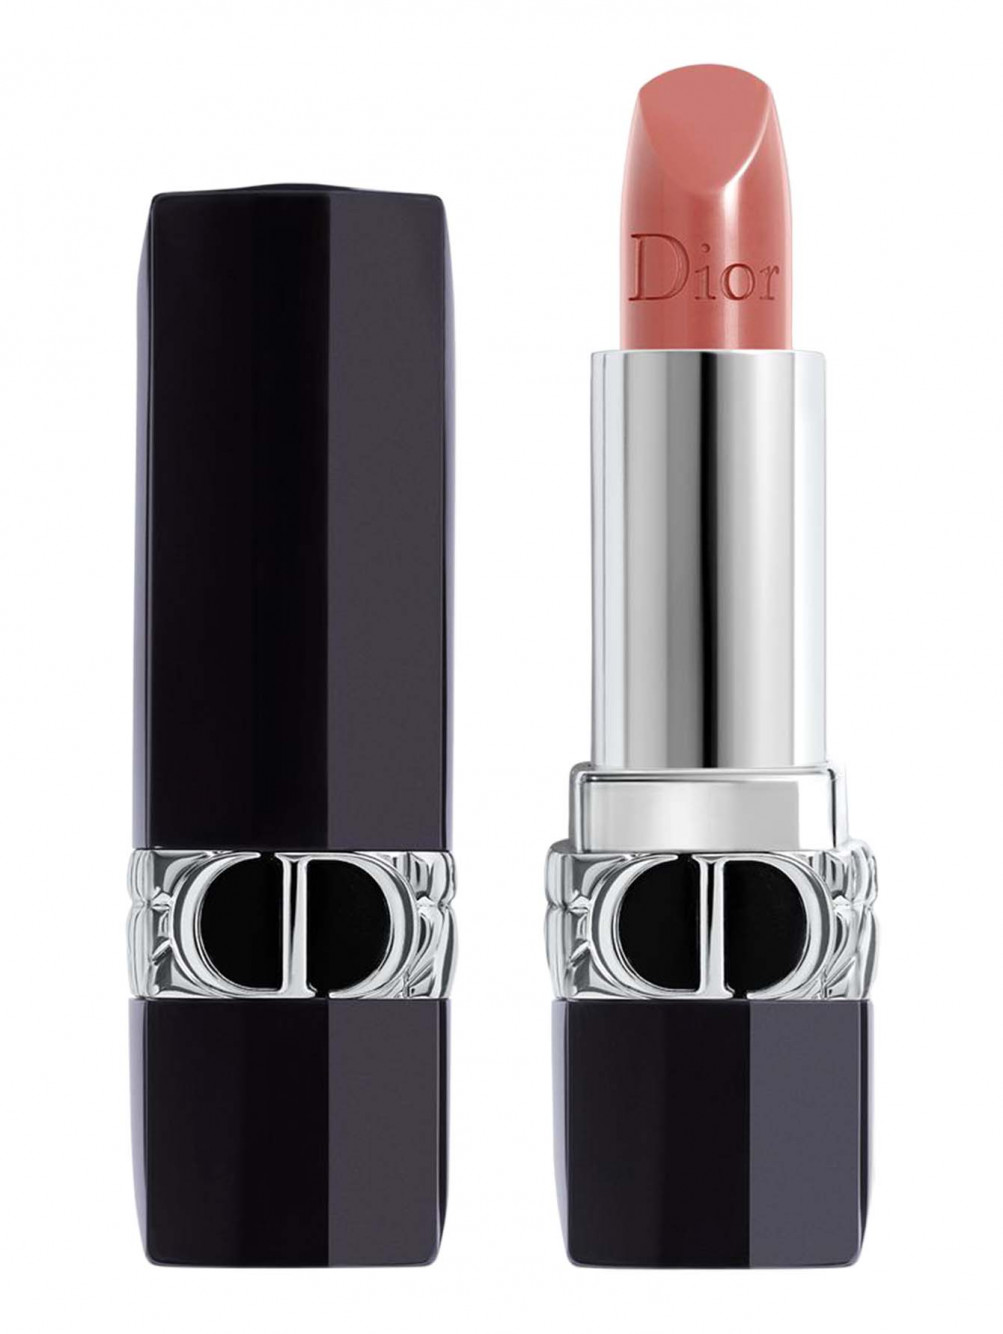 Помада-бальзам для губ Rouge Dior Balm, 100 Естественный, 3,5 г - Общий вид